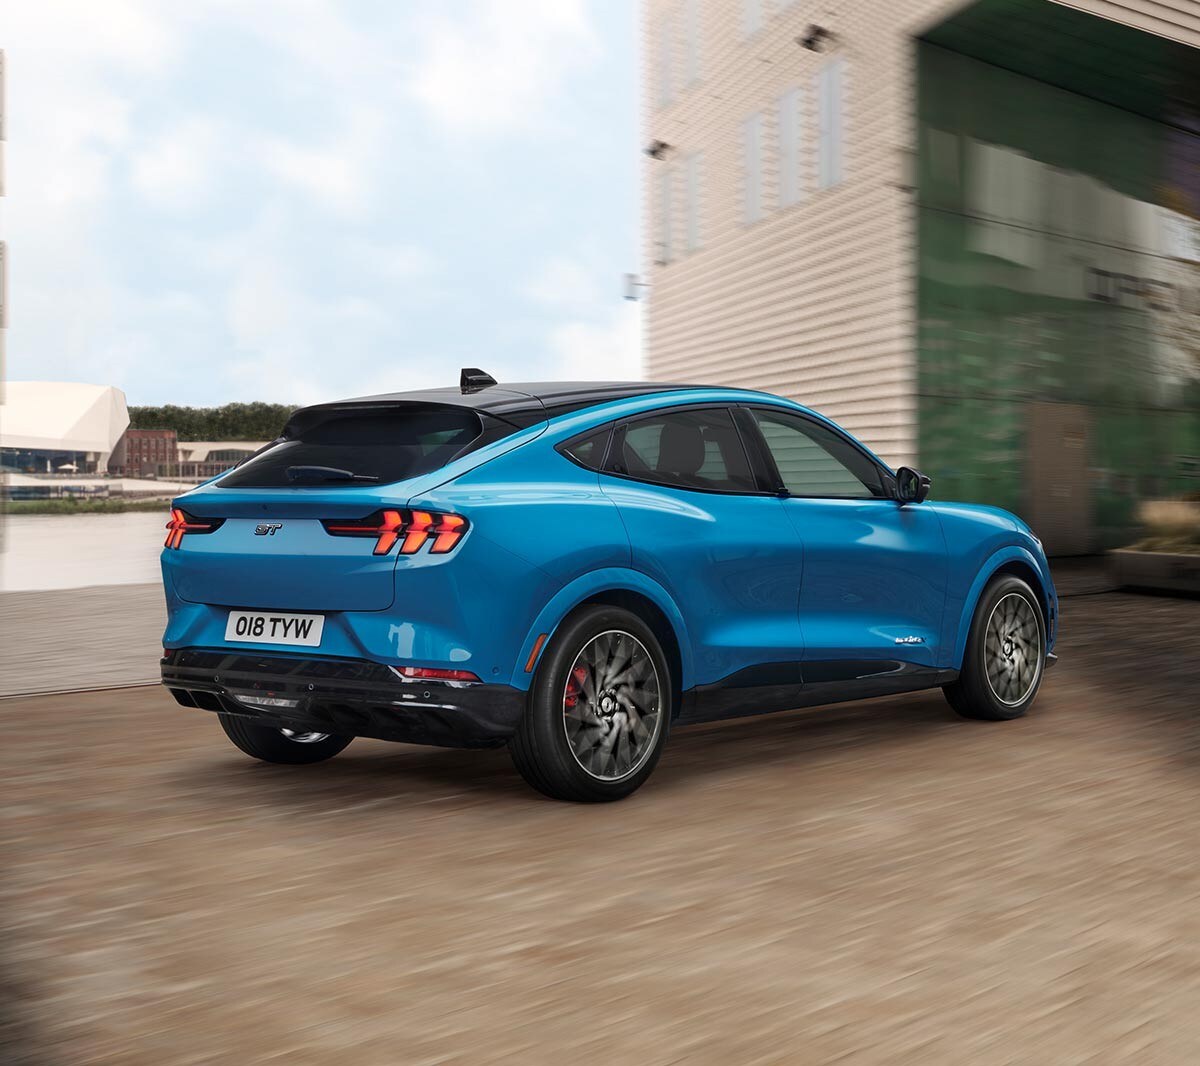 Ford Mustang Mach-E GT in Blau. Dreiviertelansicht von hinten, fahrend in einem Industriegebiet